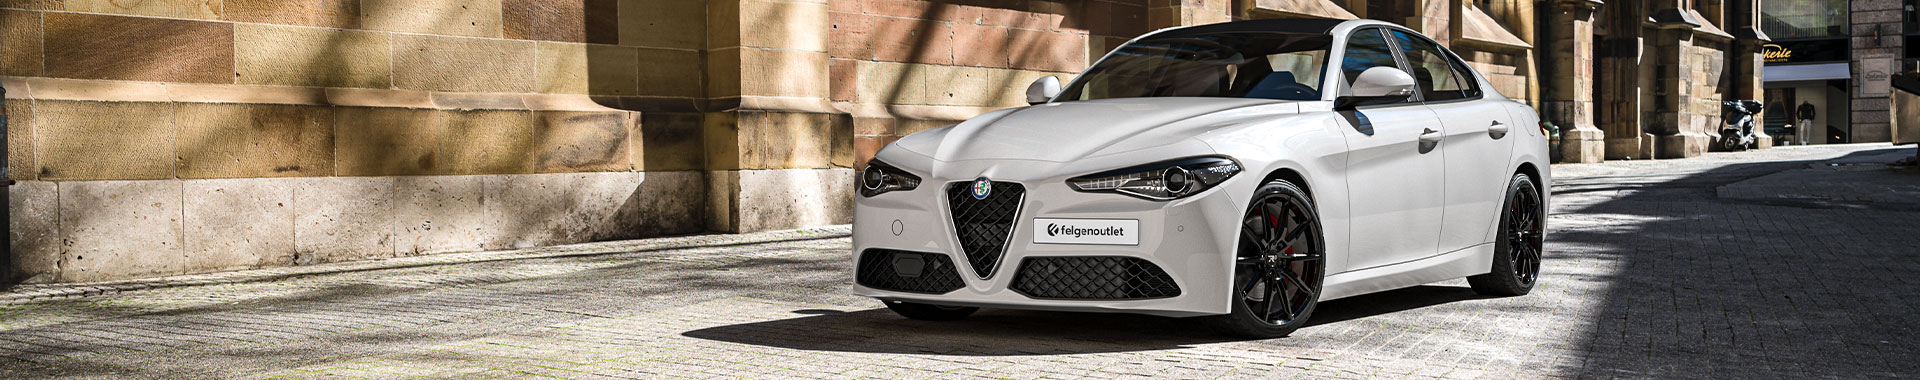  Felgen, Reifen und Kompletträder für Alfa Romeo